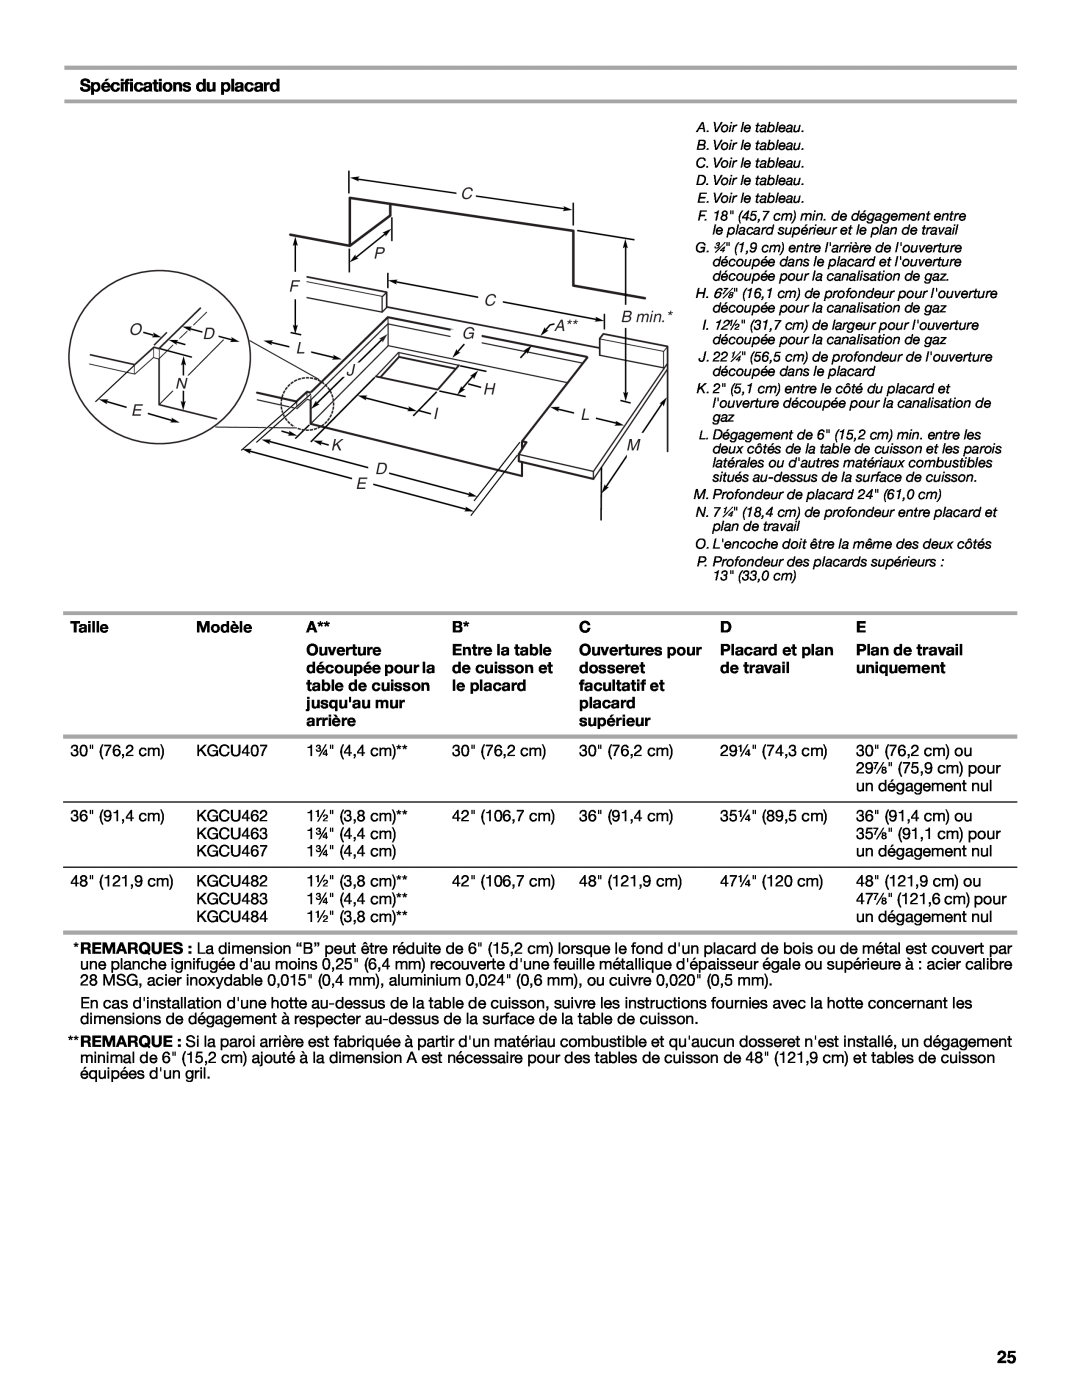 KitchenAid W10271686C Spécifications du placard, Taille, Modèle, Entre la table, Ouvertures pour, Placard et plan 